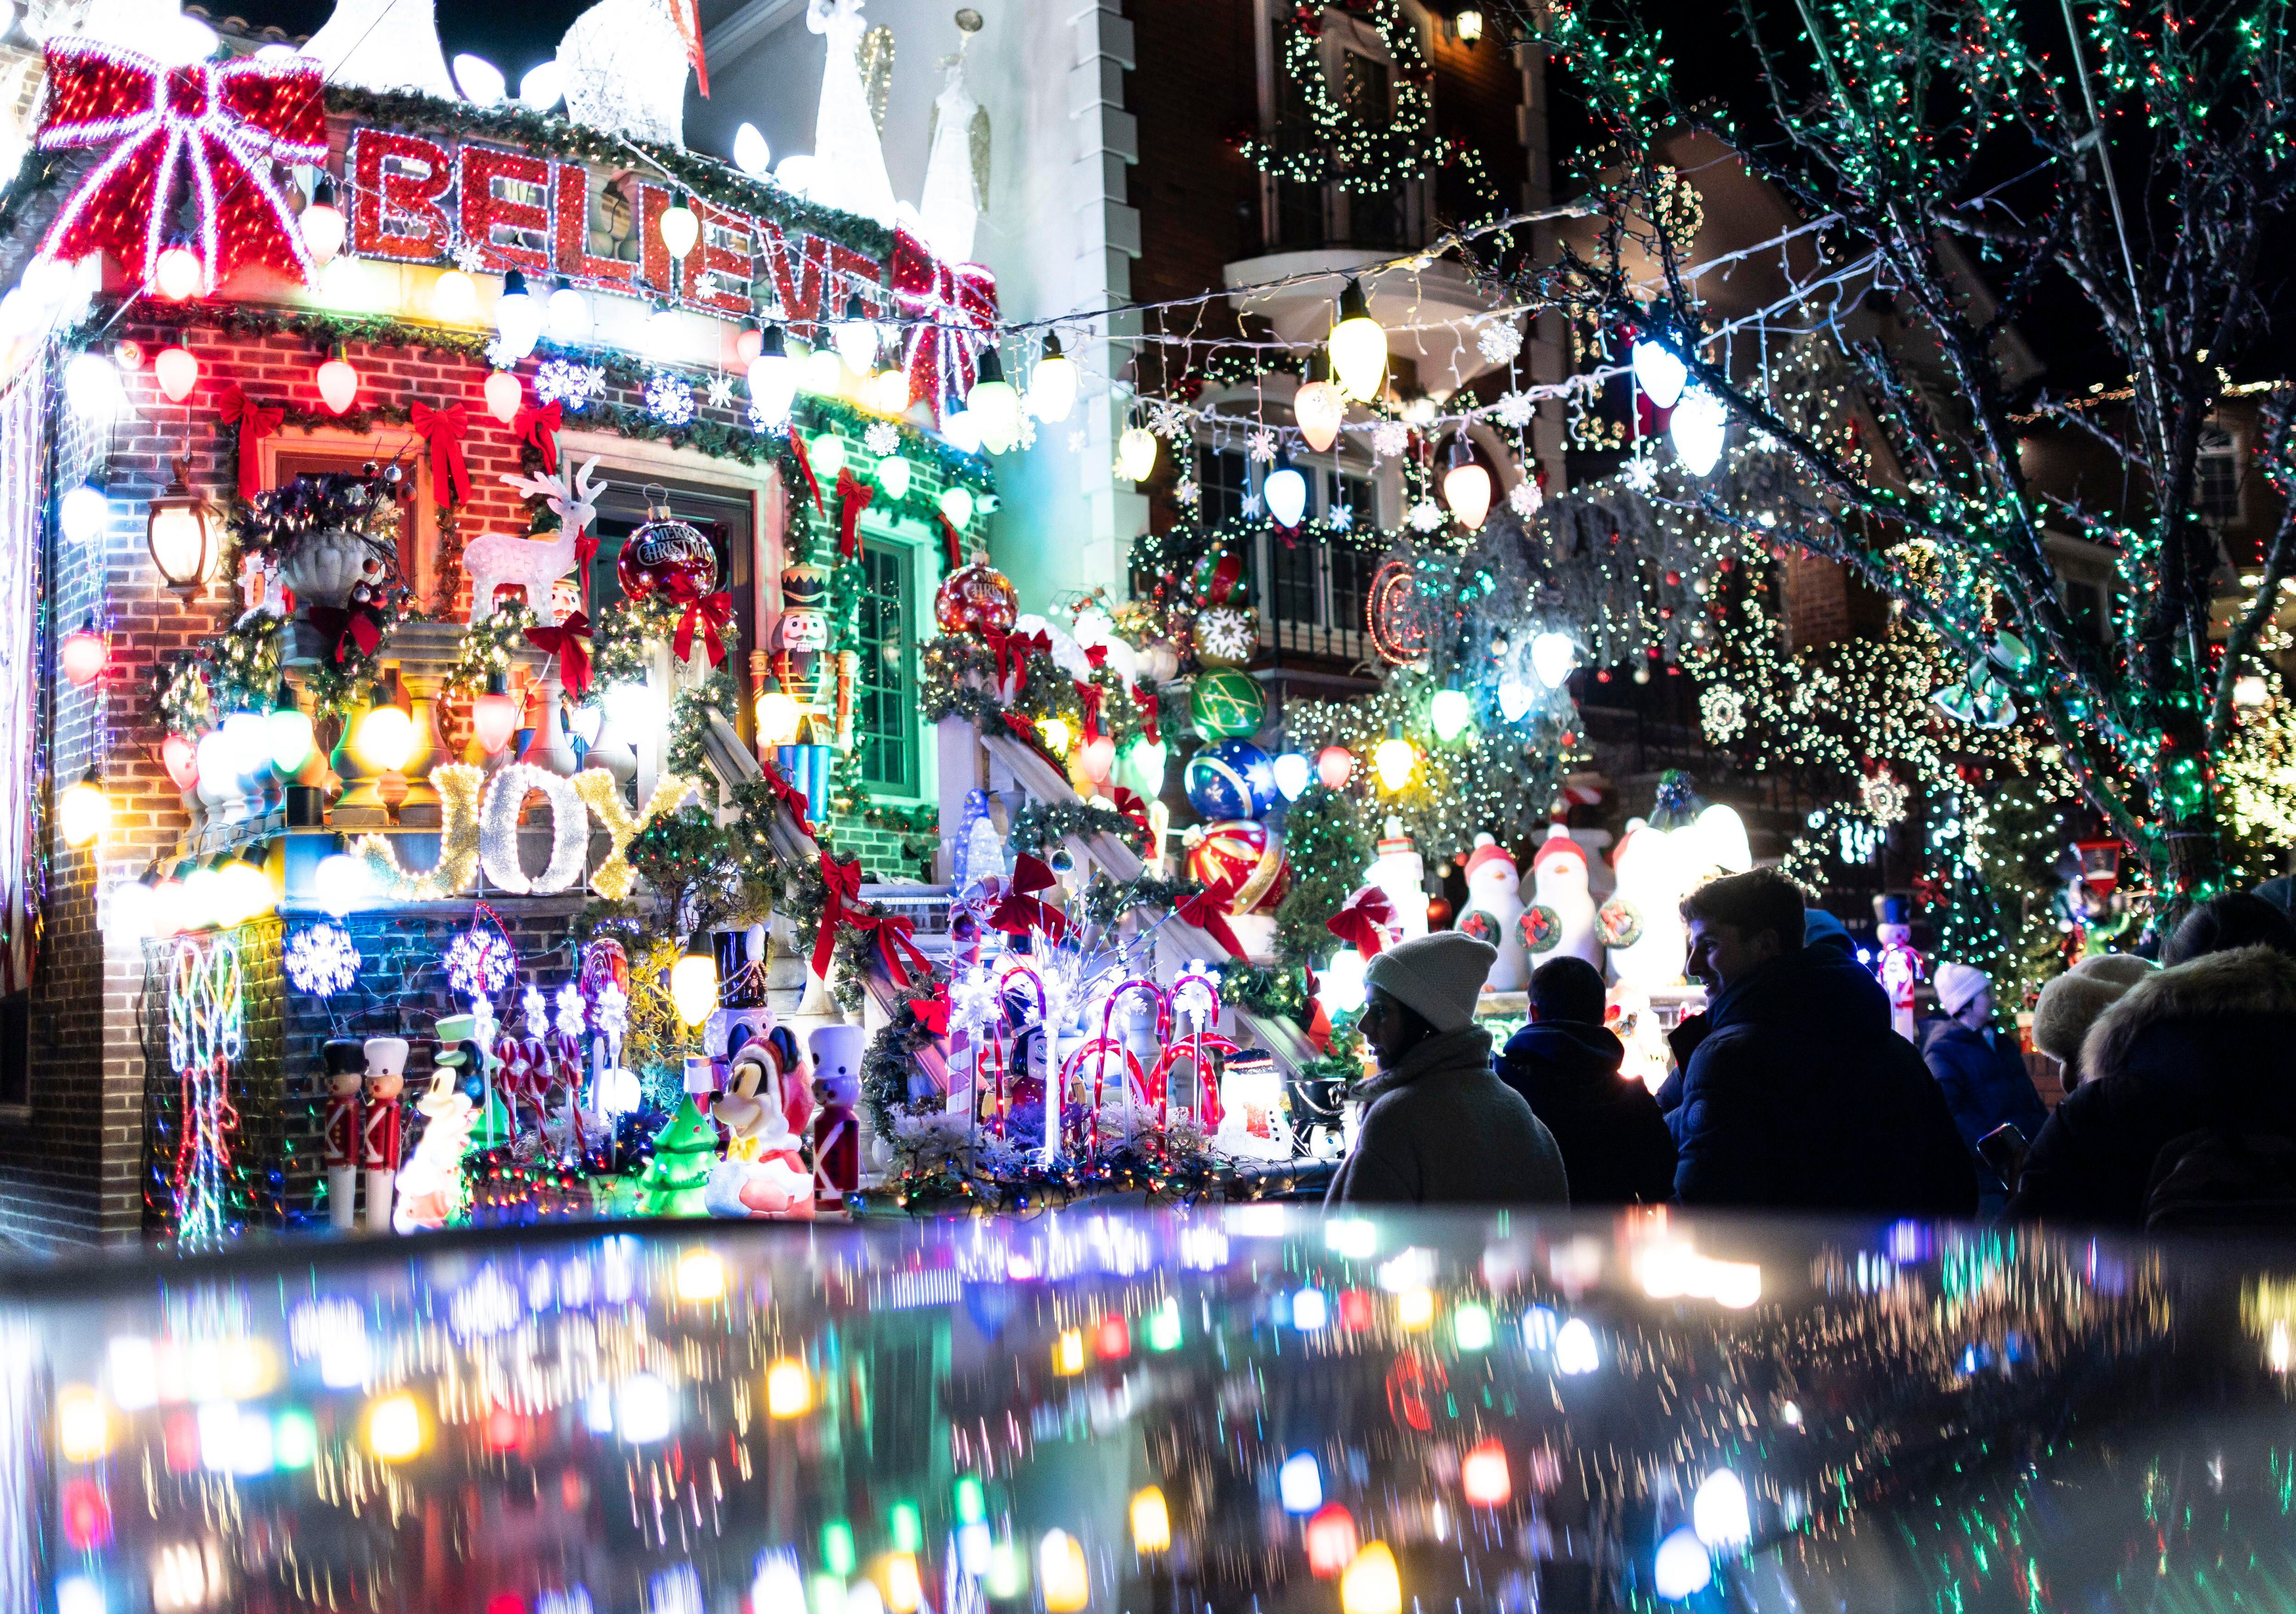 El barrio de Dyker Heights, en Brooklyn, es famoso por la iluminación navideña de sus viviendas, una tradición que se remonta a 1986 y que fue iniciada por una vecina, Lucy Spata.